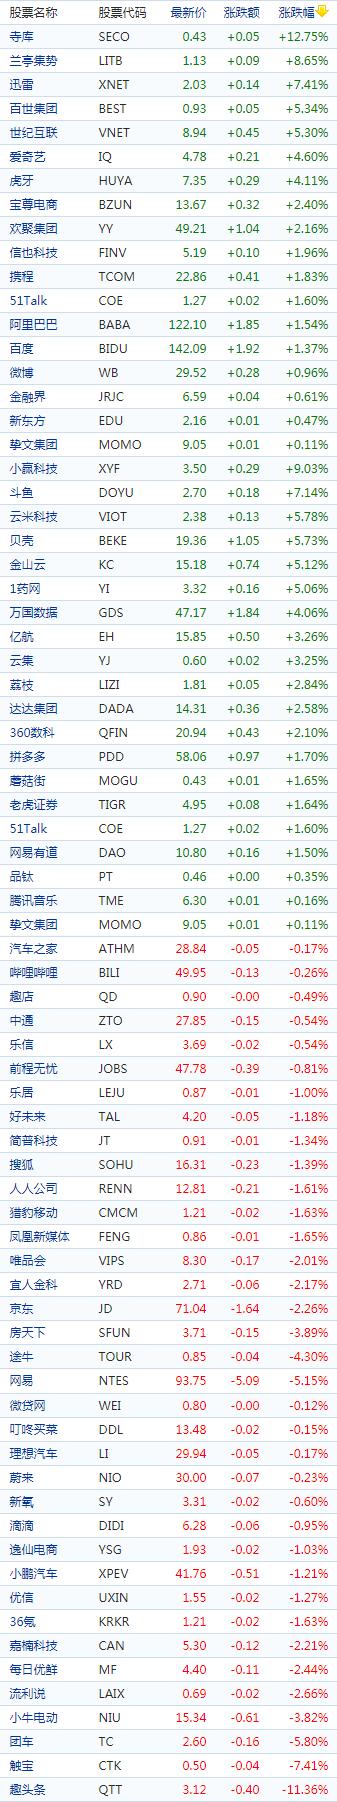 中国概念股周五收盘涨跌互现 教育股多上涨贝壳涨逾5%